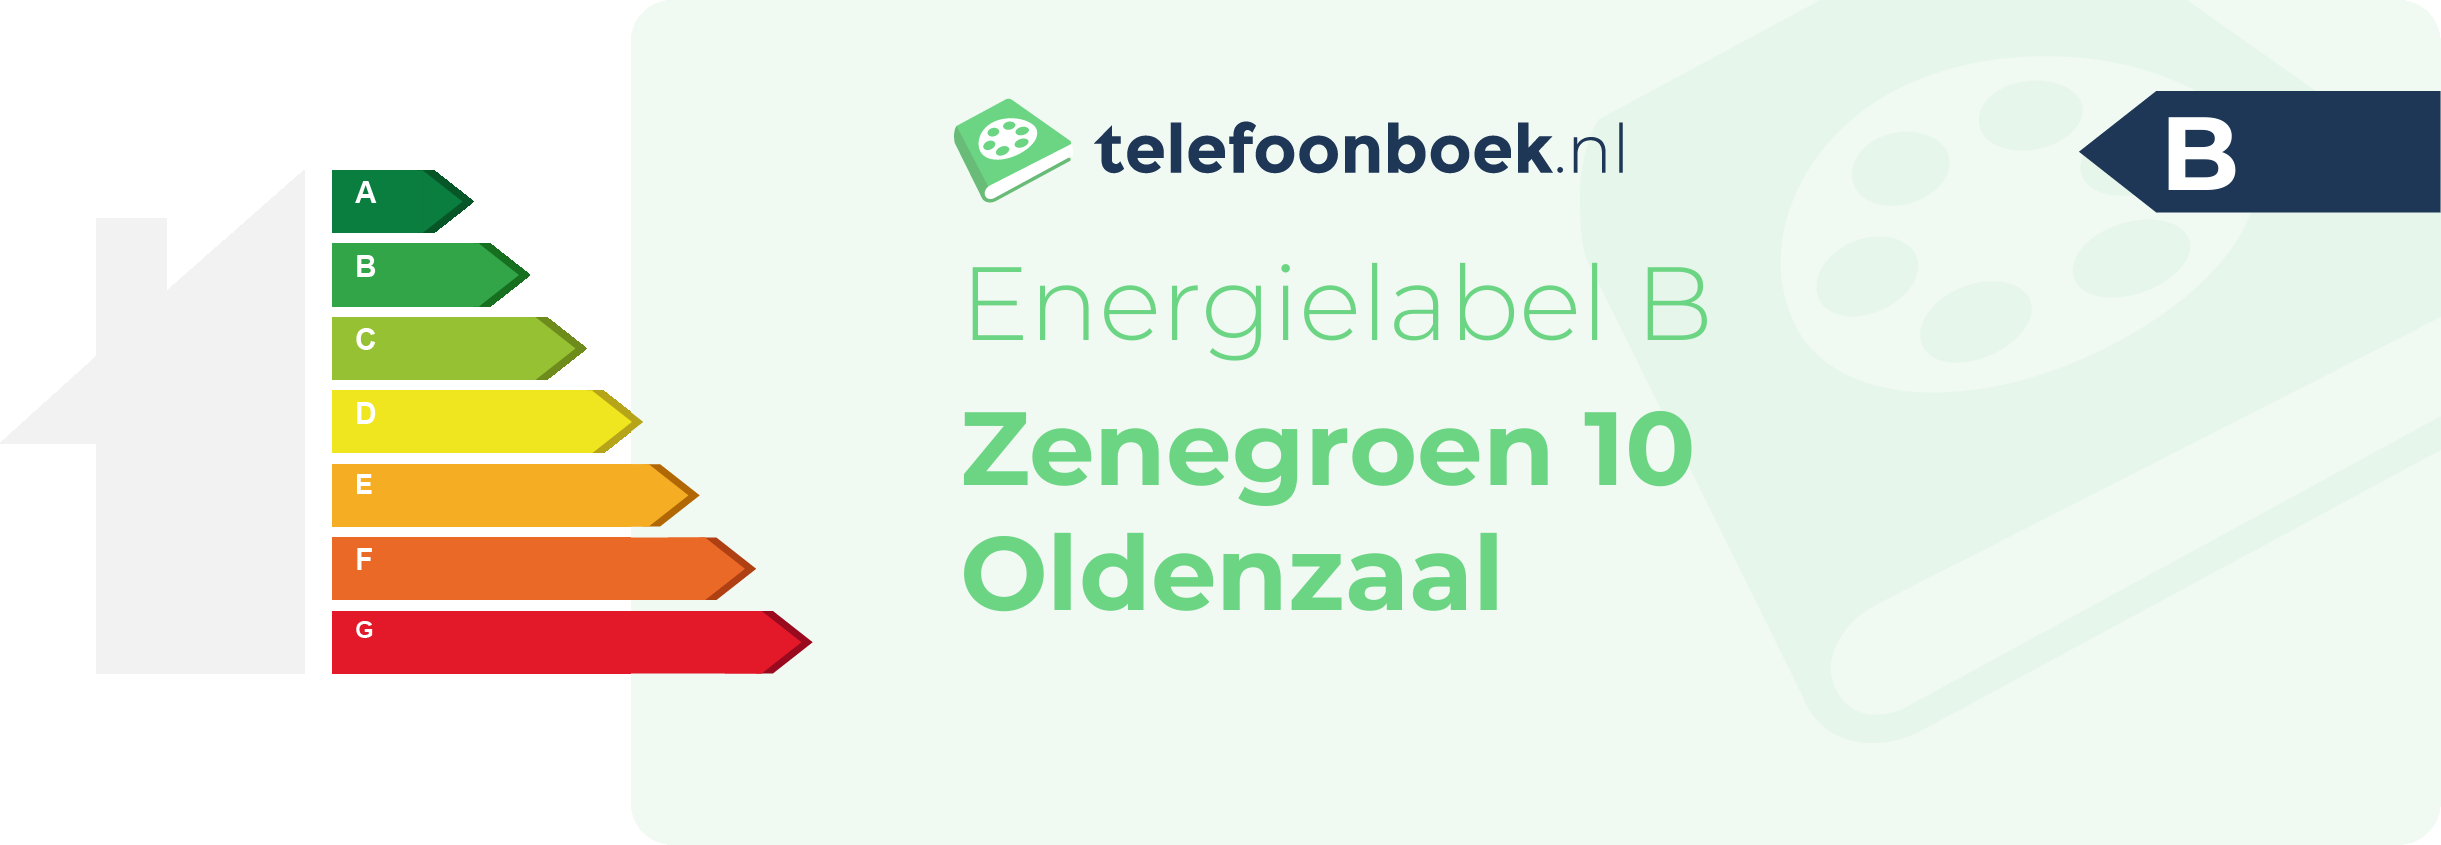 Energielabel Zenegroen 10 Oldenzaal